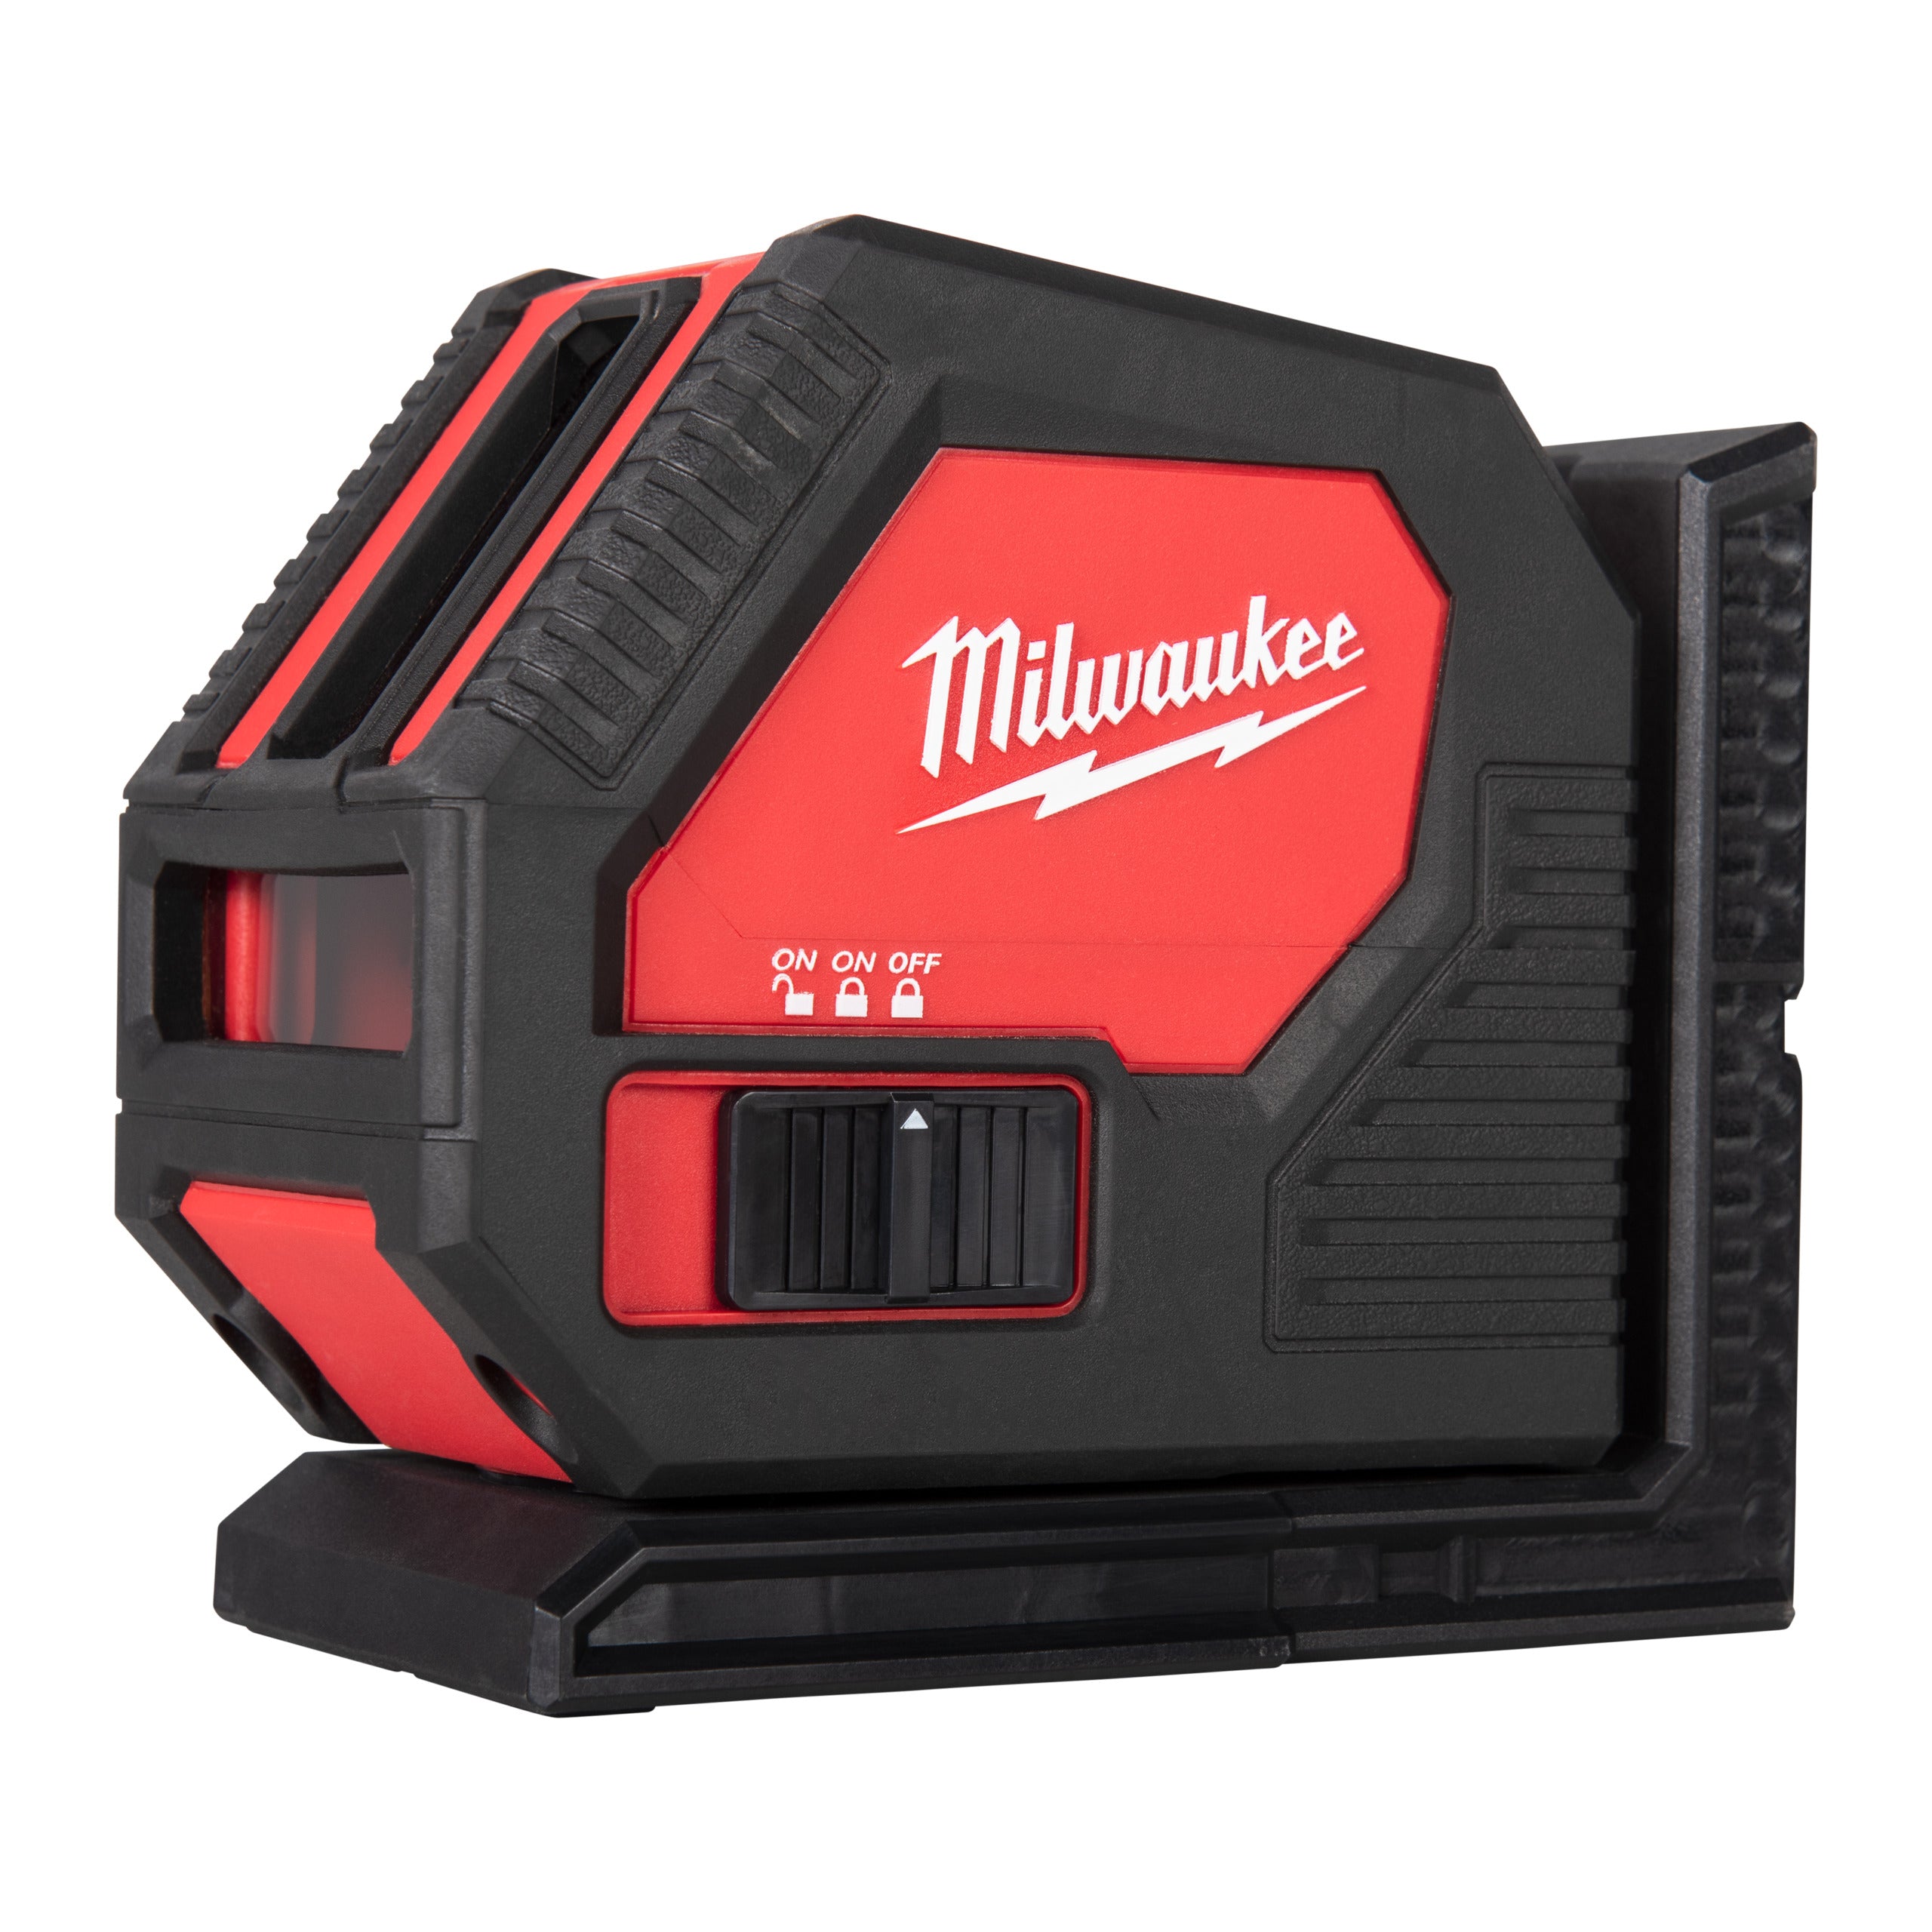 Nivelă laser Milwaukee CLL-C cu 2 planuri, fascicul verde, baterii alcaline, cutie plastic, suport de prindere, cod 4933478753